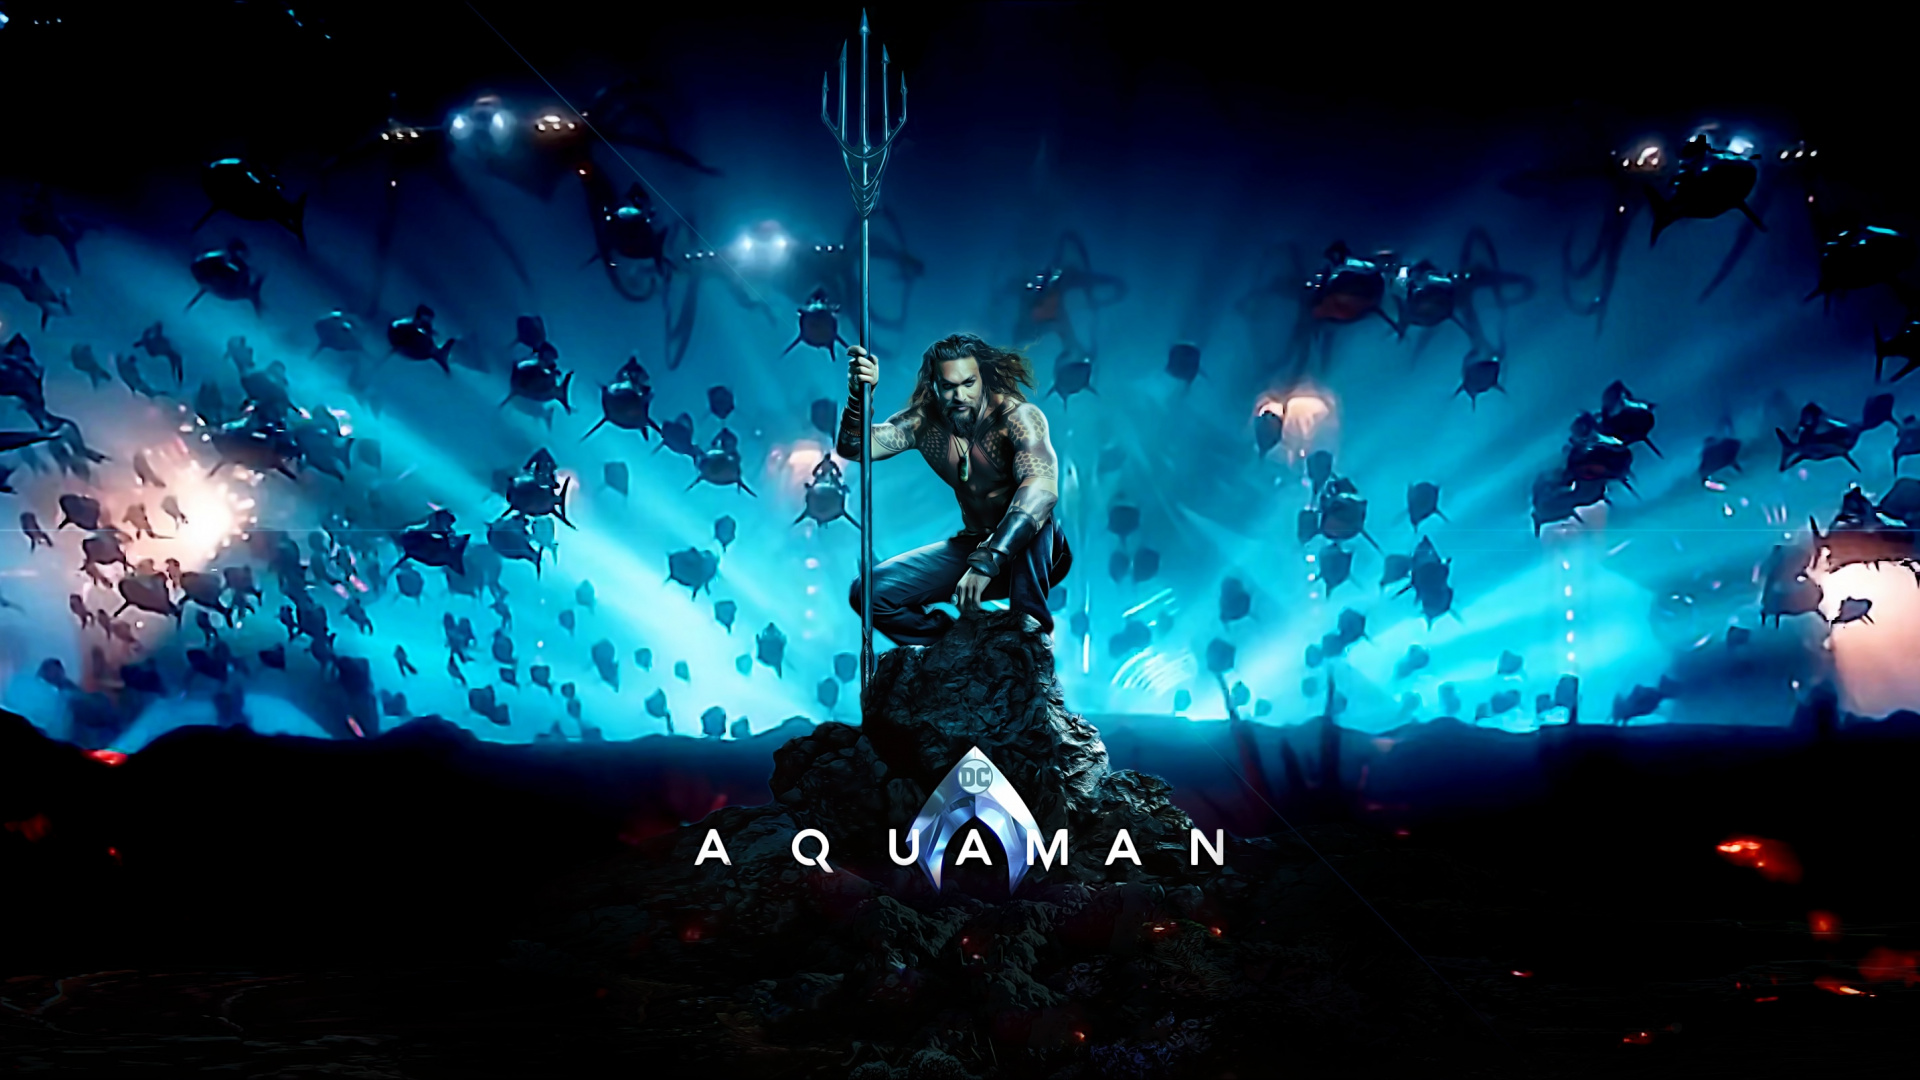 Aquaman Wallpaper 4k 2018 1440x900 Wallpaper